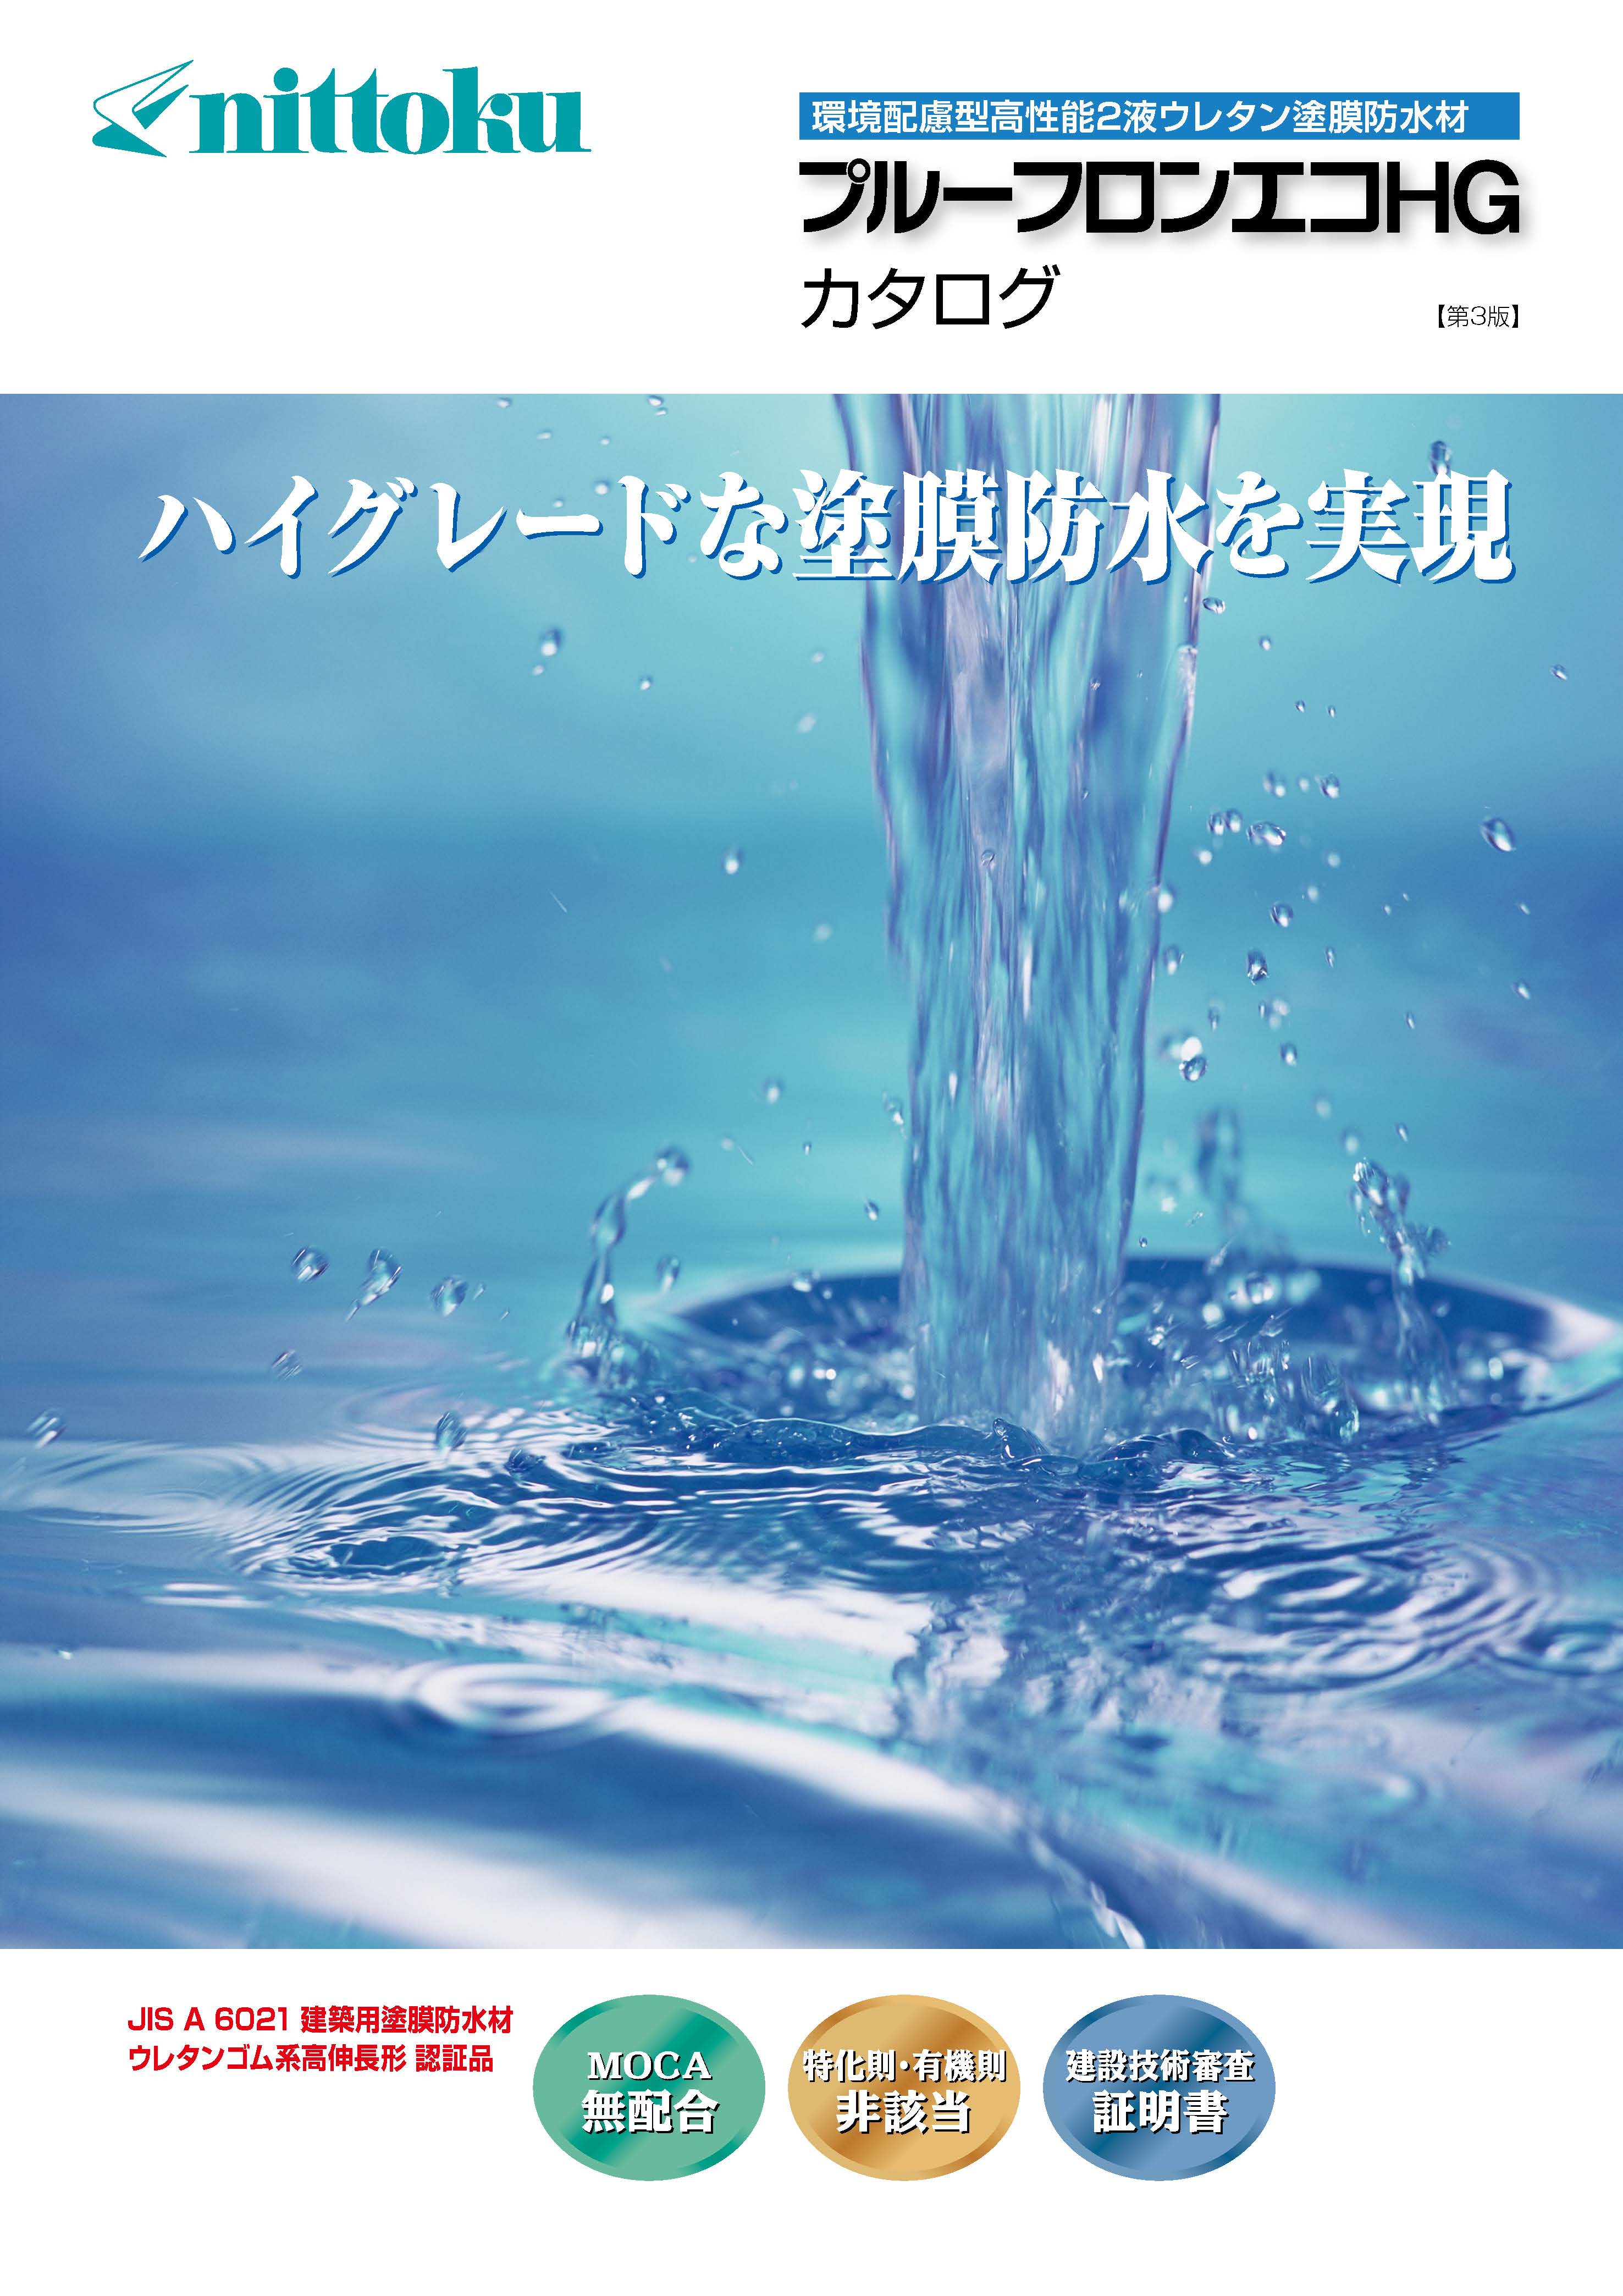 プルーフロンバリュー - （防水材｜ウレタン防水材）：日本特殊塗料株式会社 -塗料事業本部-